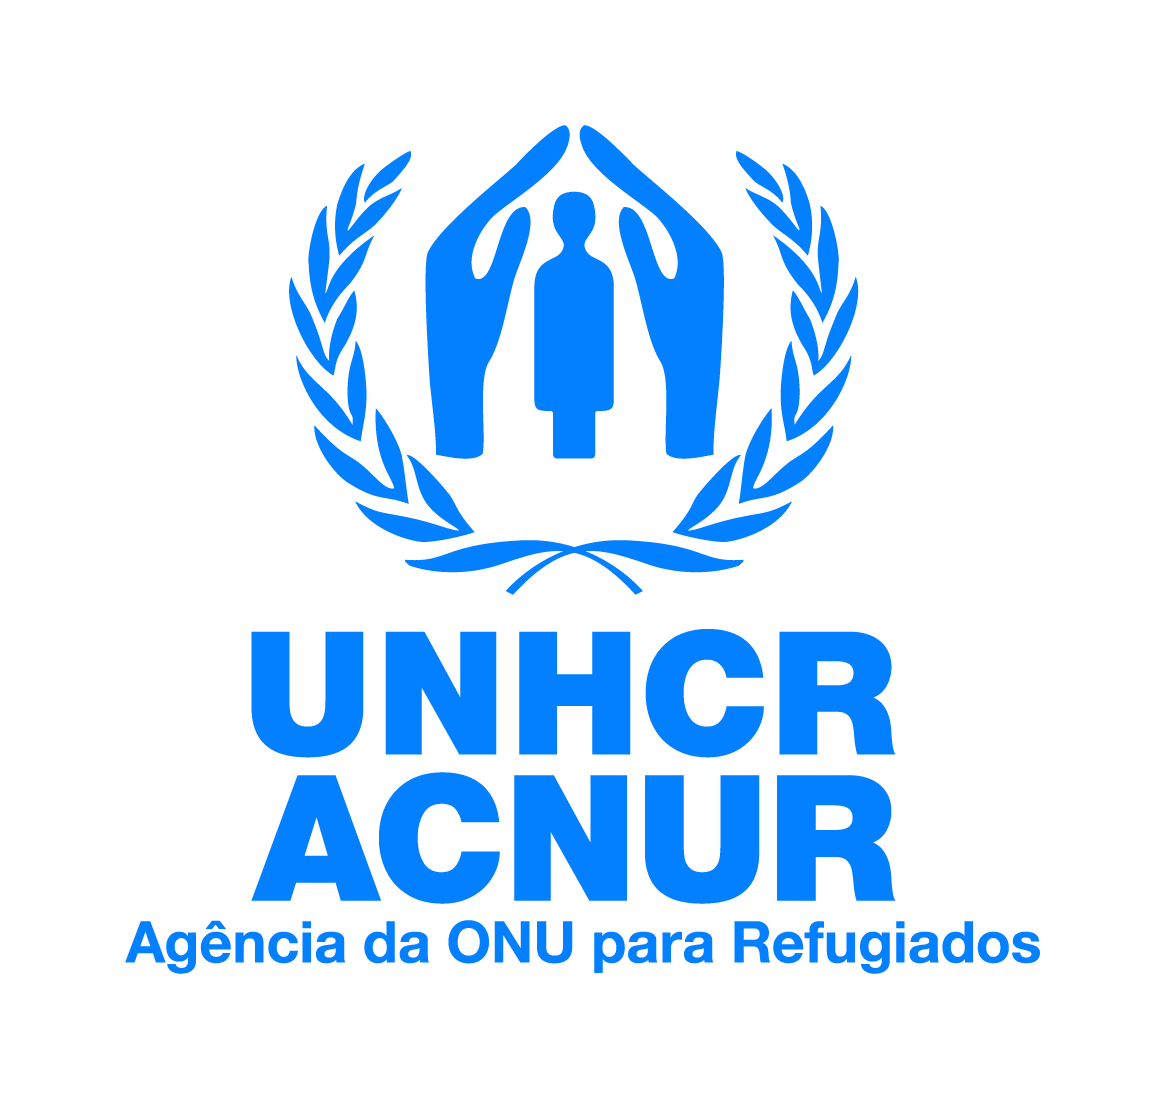 logo of UNHCR in portuguese